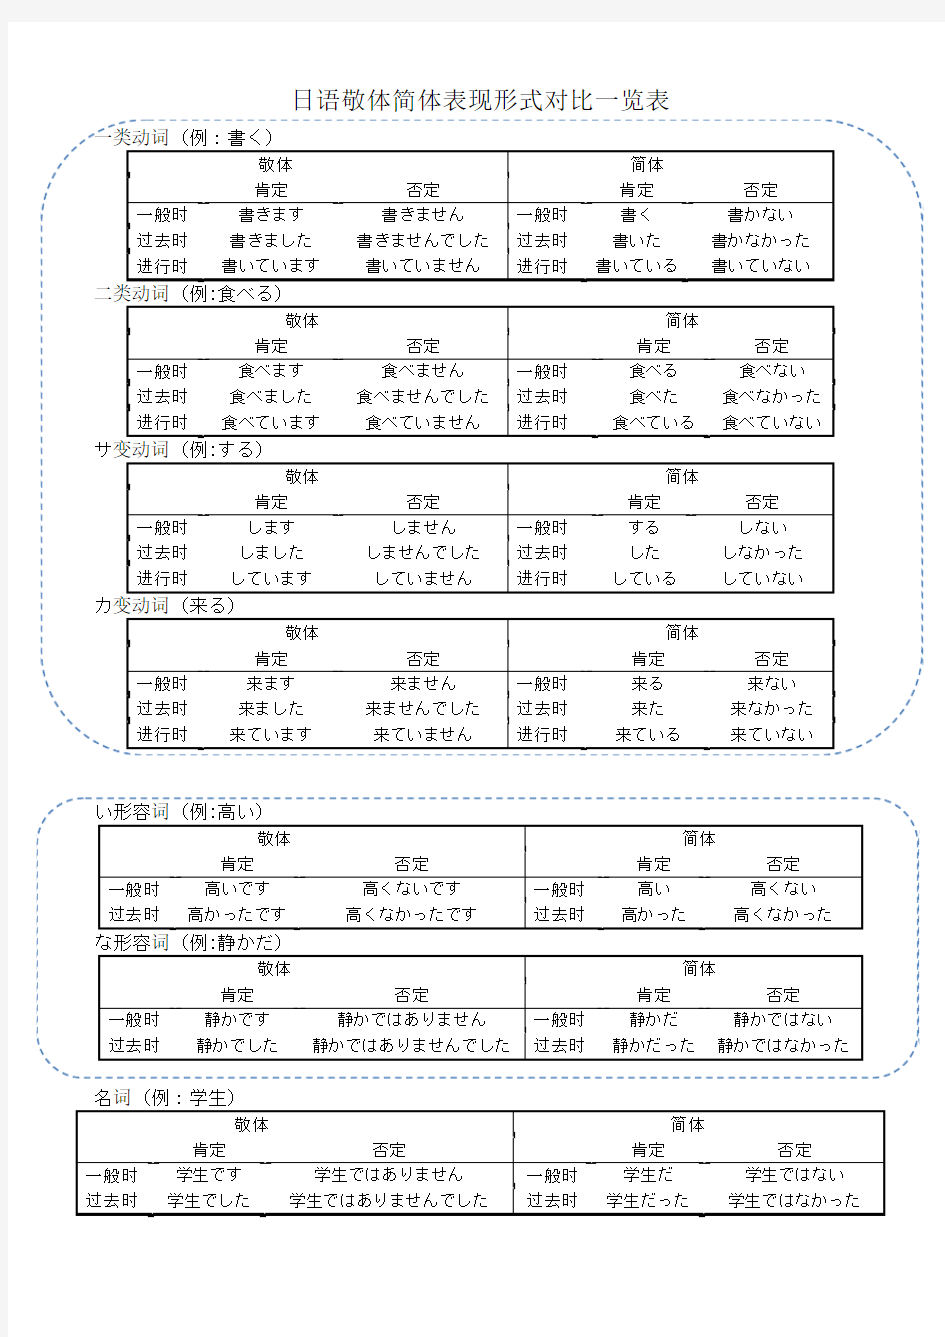 日语敬体简体表现形式对比一览表